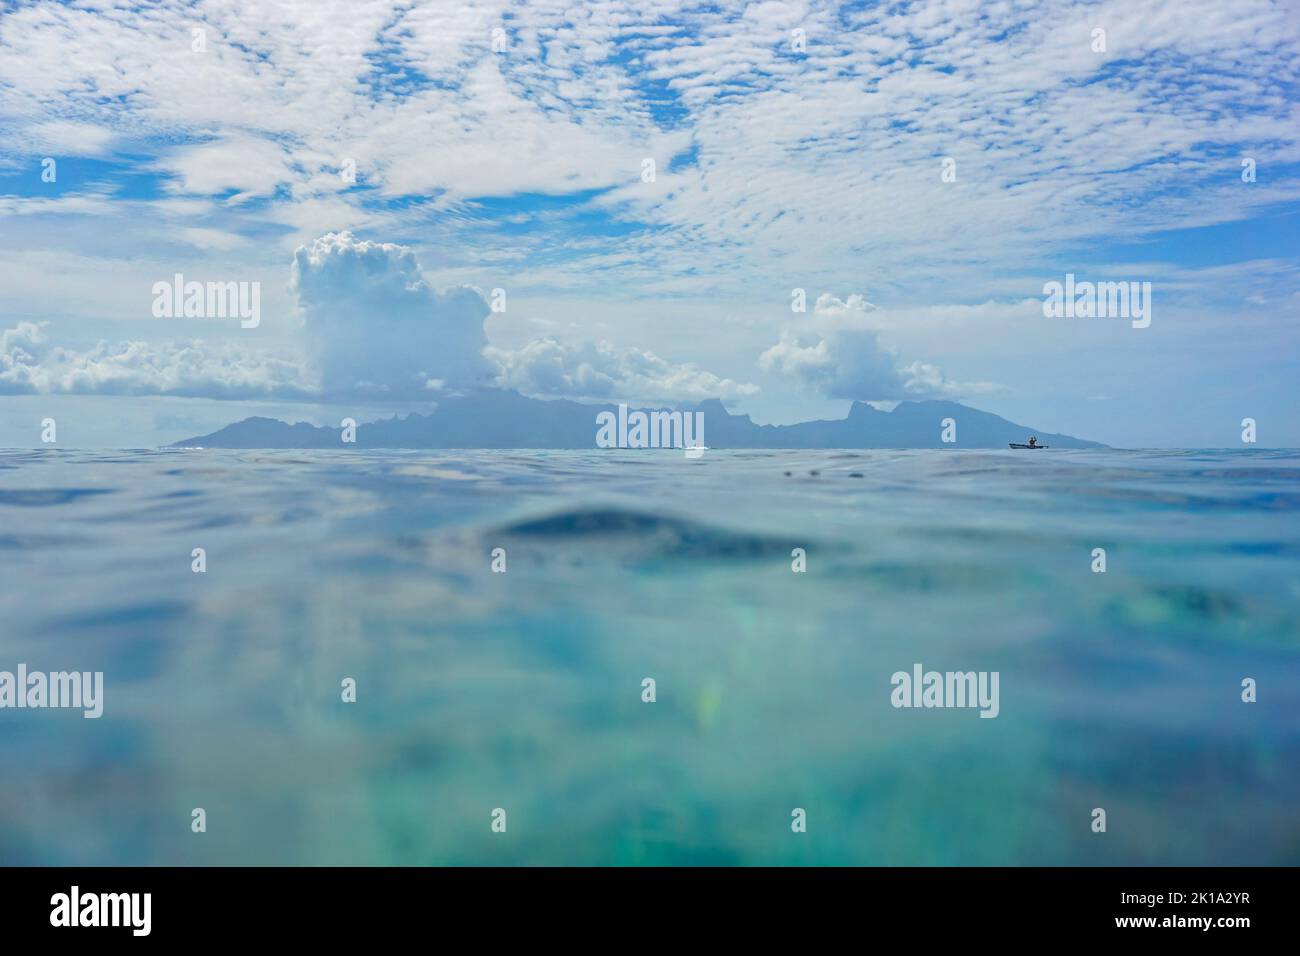 Moorea île à l'horizon vue de la surface de l'eau avec ciel bleu et nuage, paysage marin tropical, océan Pacifique sud, Polynésie française Banque D'Images